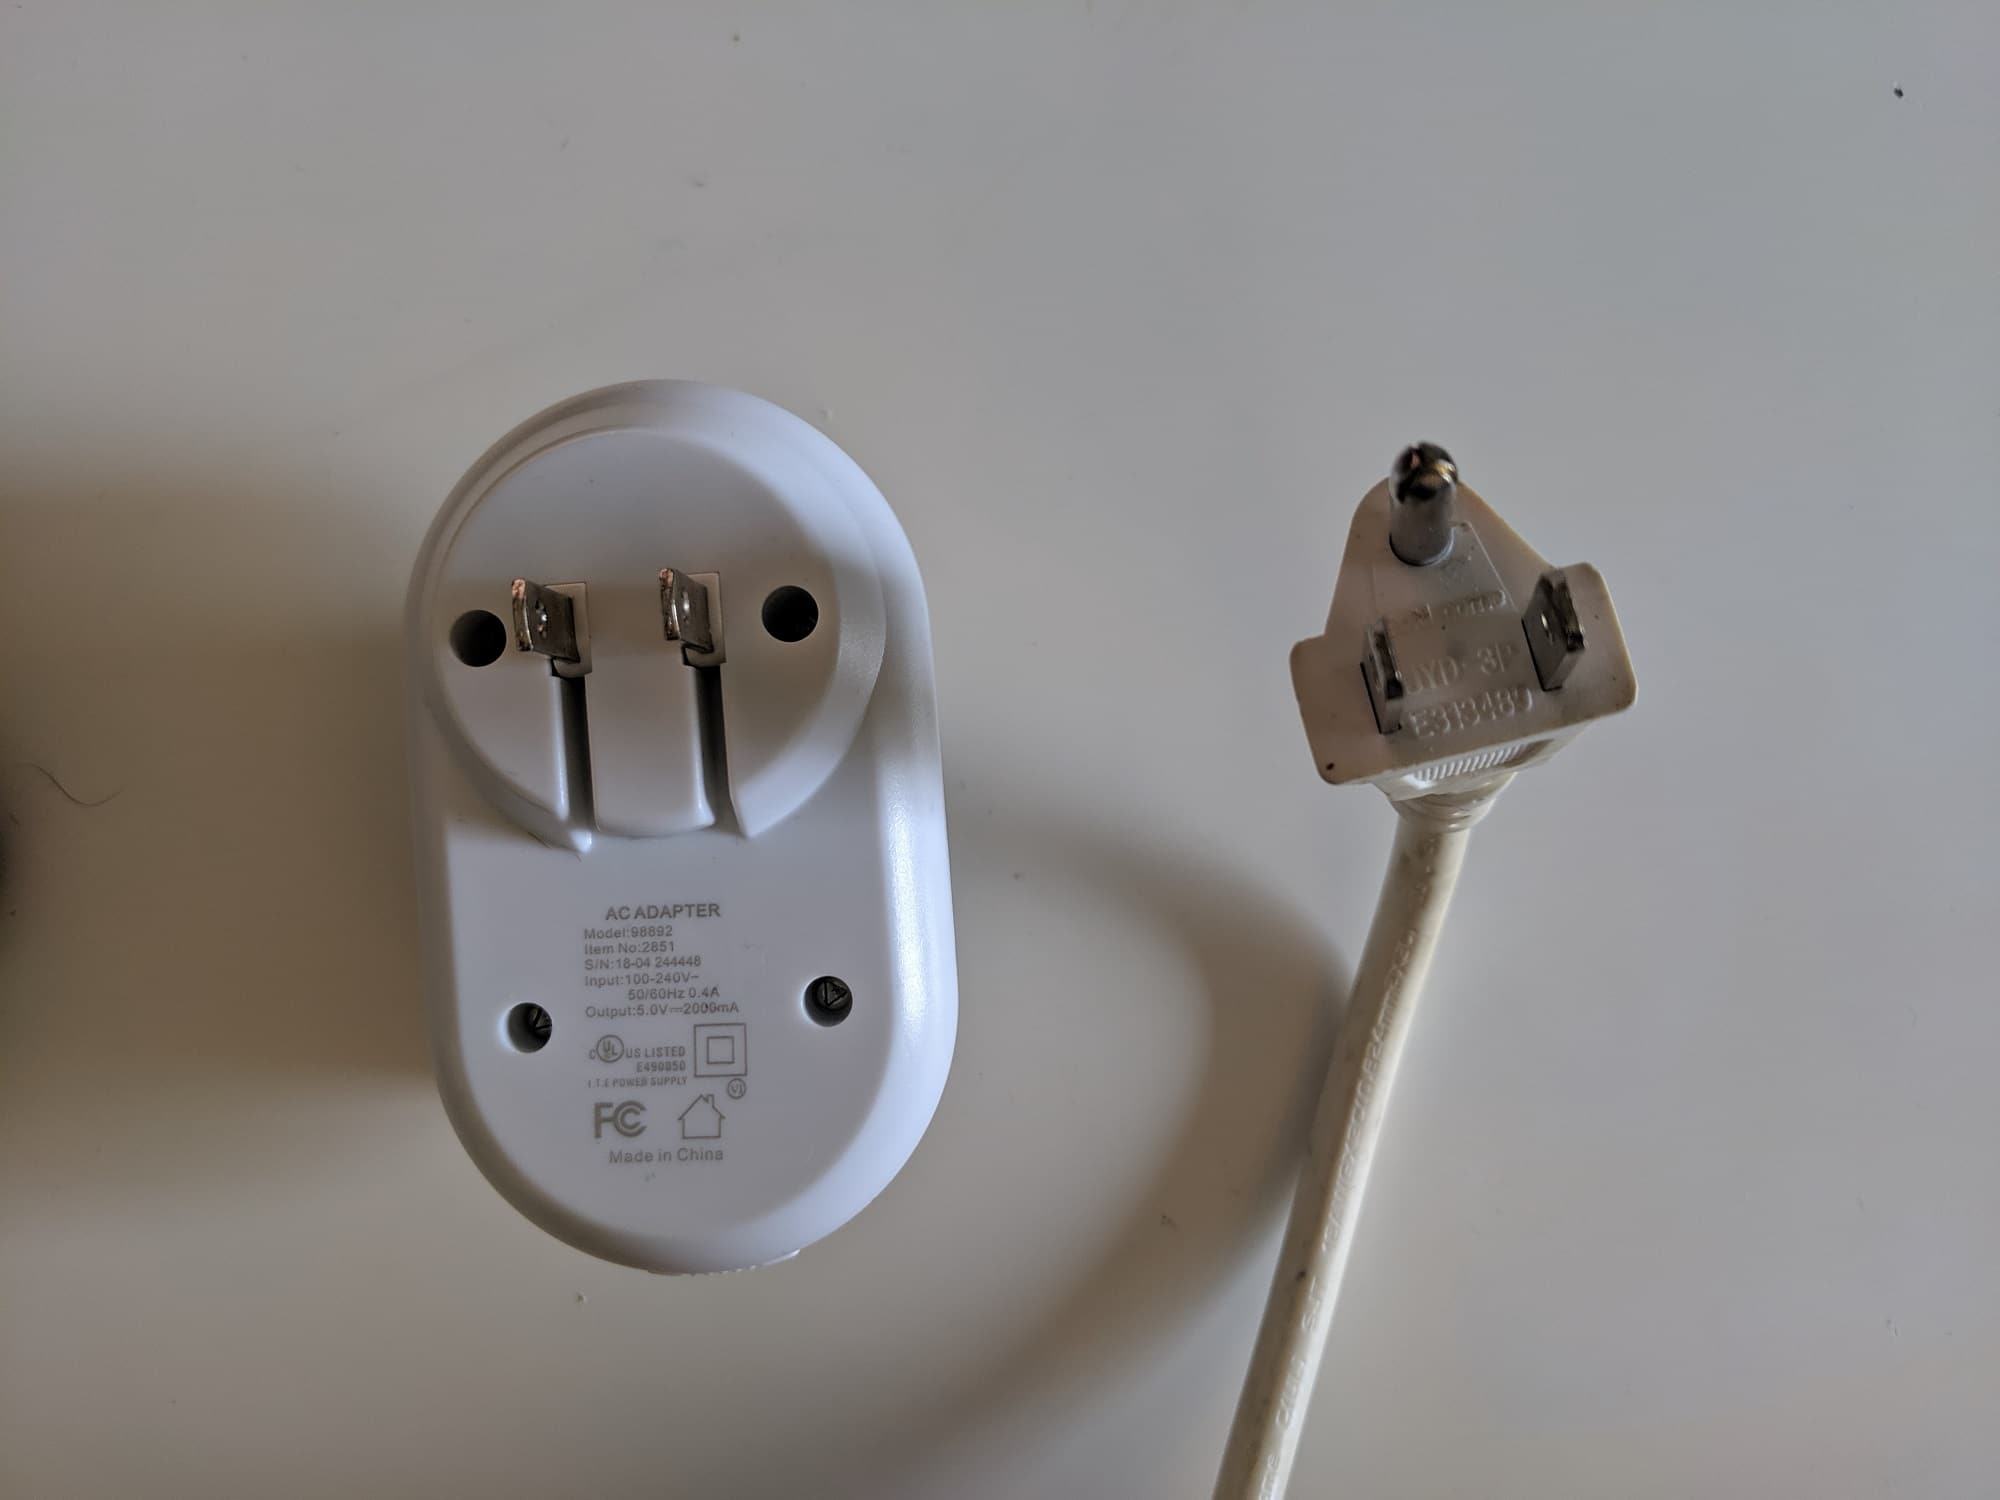 USA Type A and B plugs